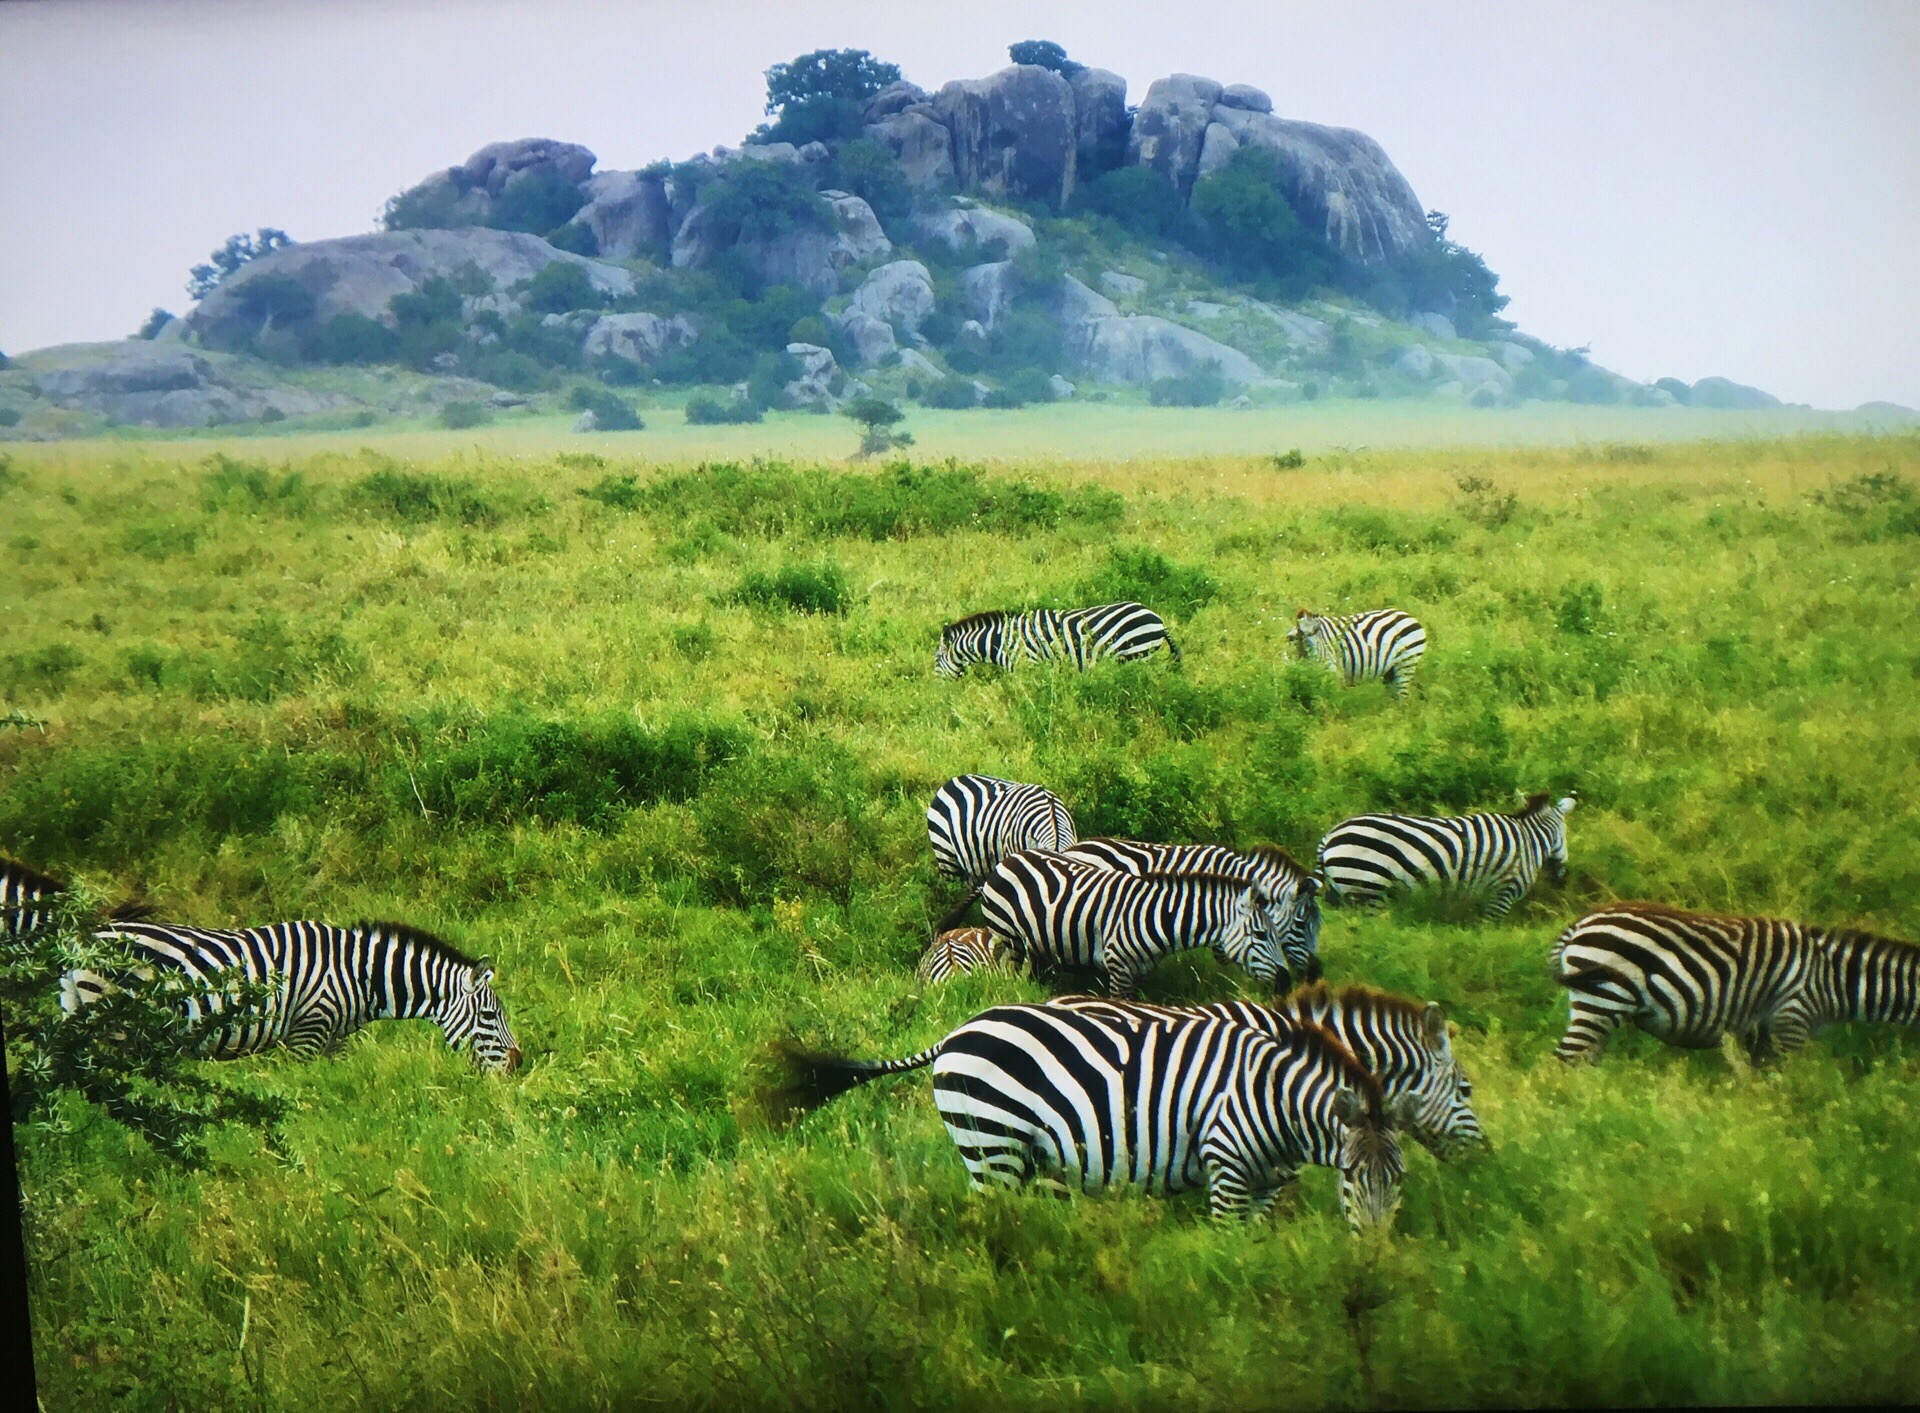 坦桑尼亚 塞伦盖蒂 非洲大陆最广阔的野生动物集聚地  每年都会上演动物大迁徙的壮观场景 我们是201